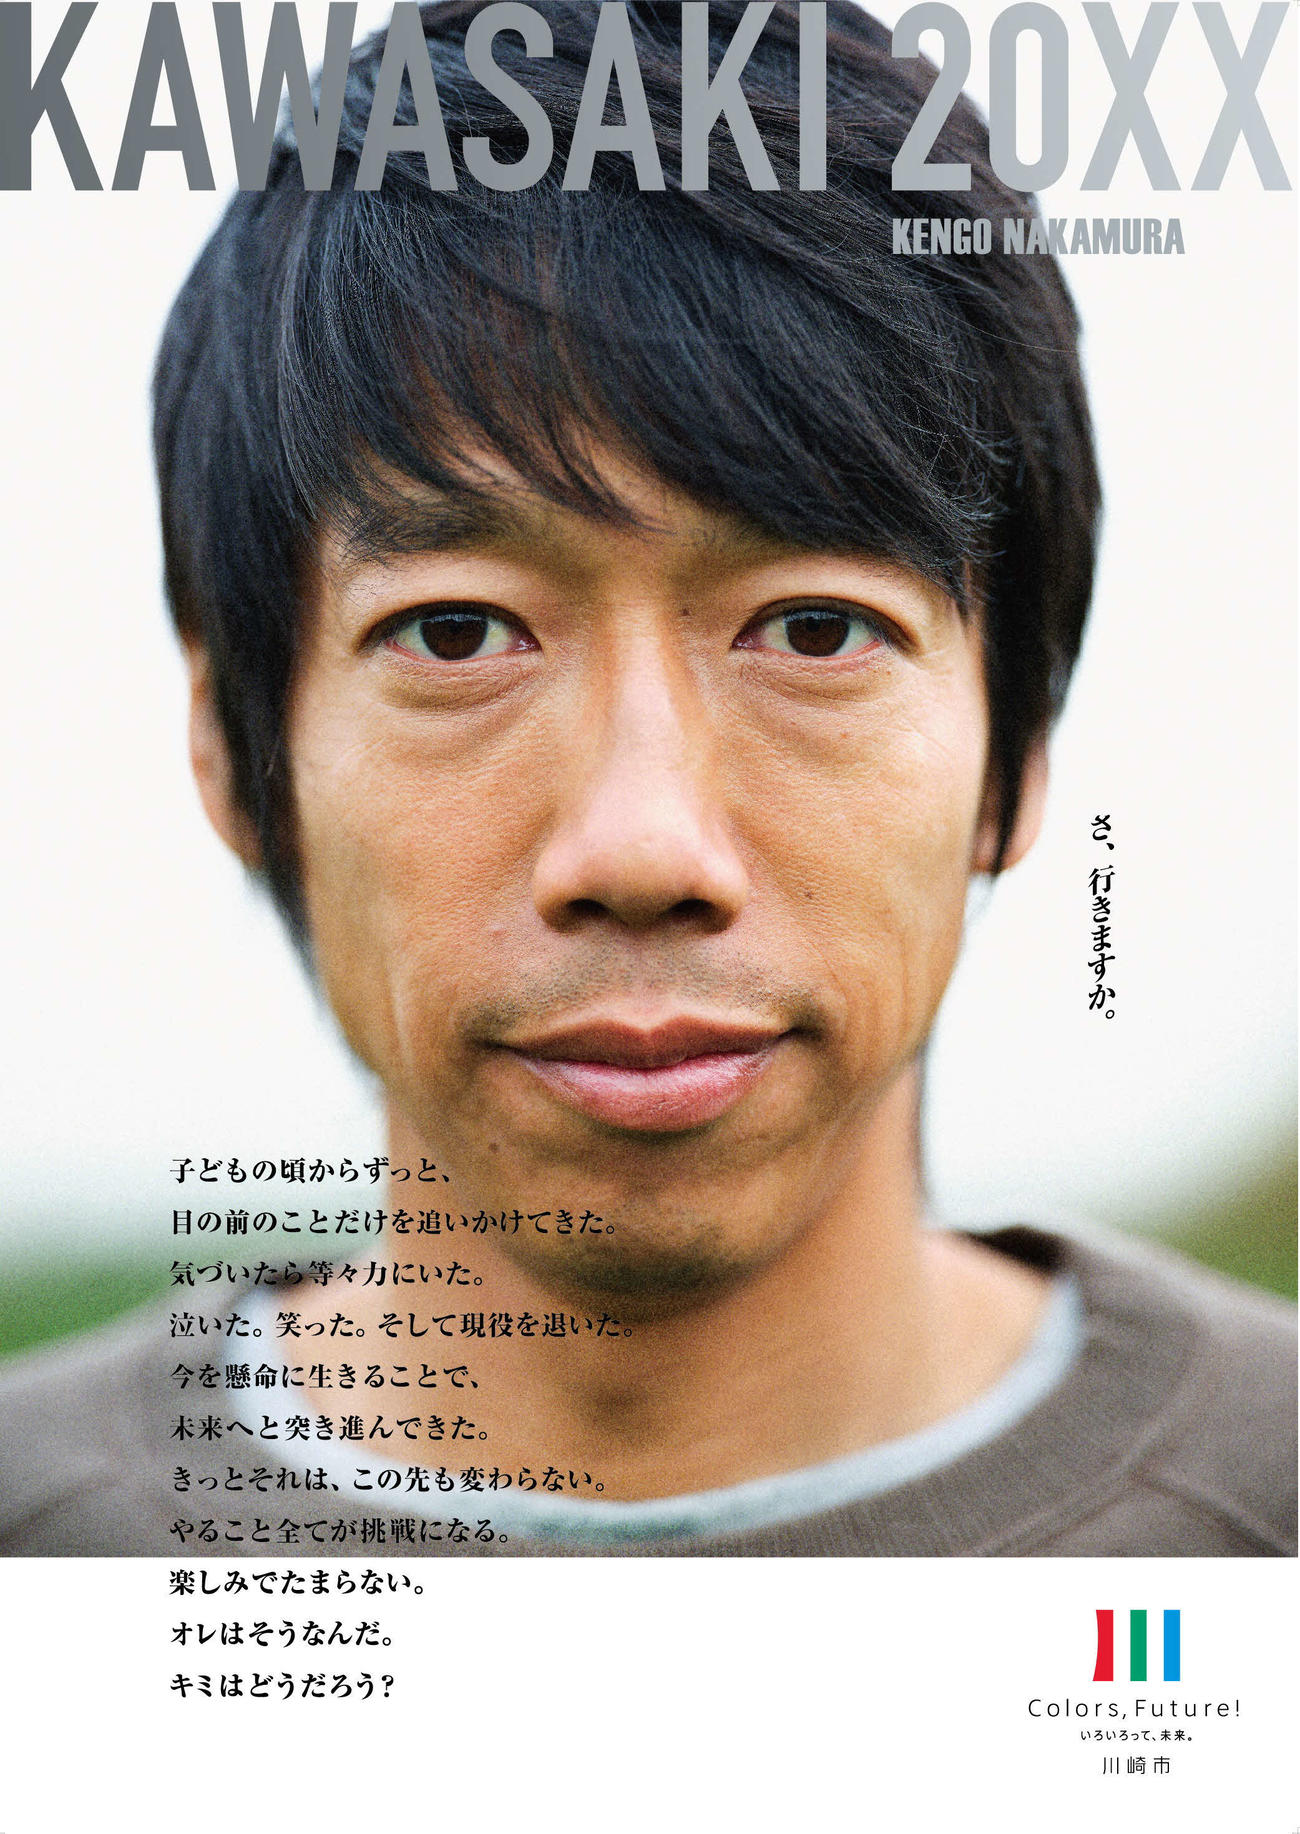 中村憲剛さんを起用した、川崎市のブランドメッセージポスター